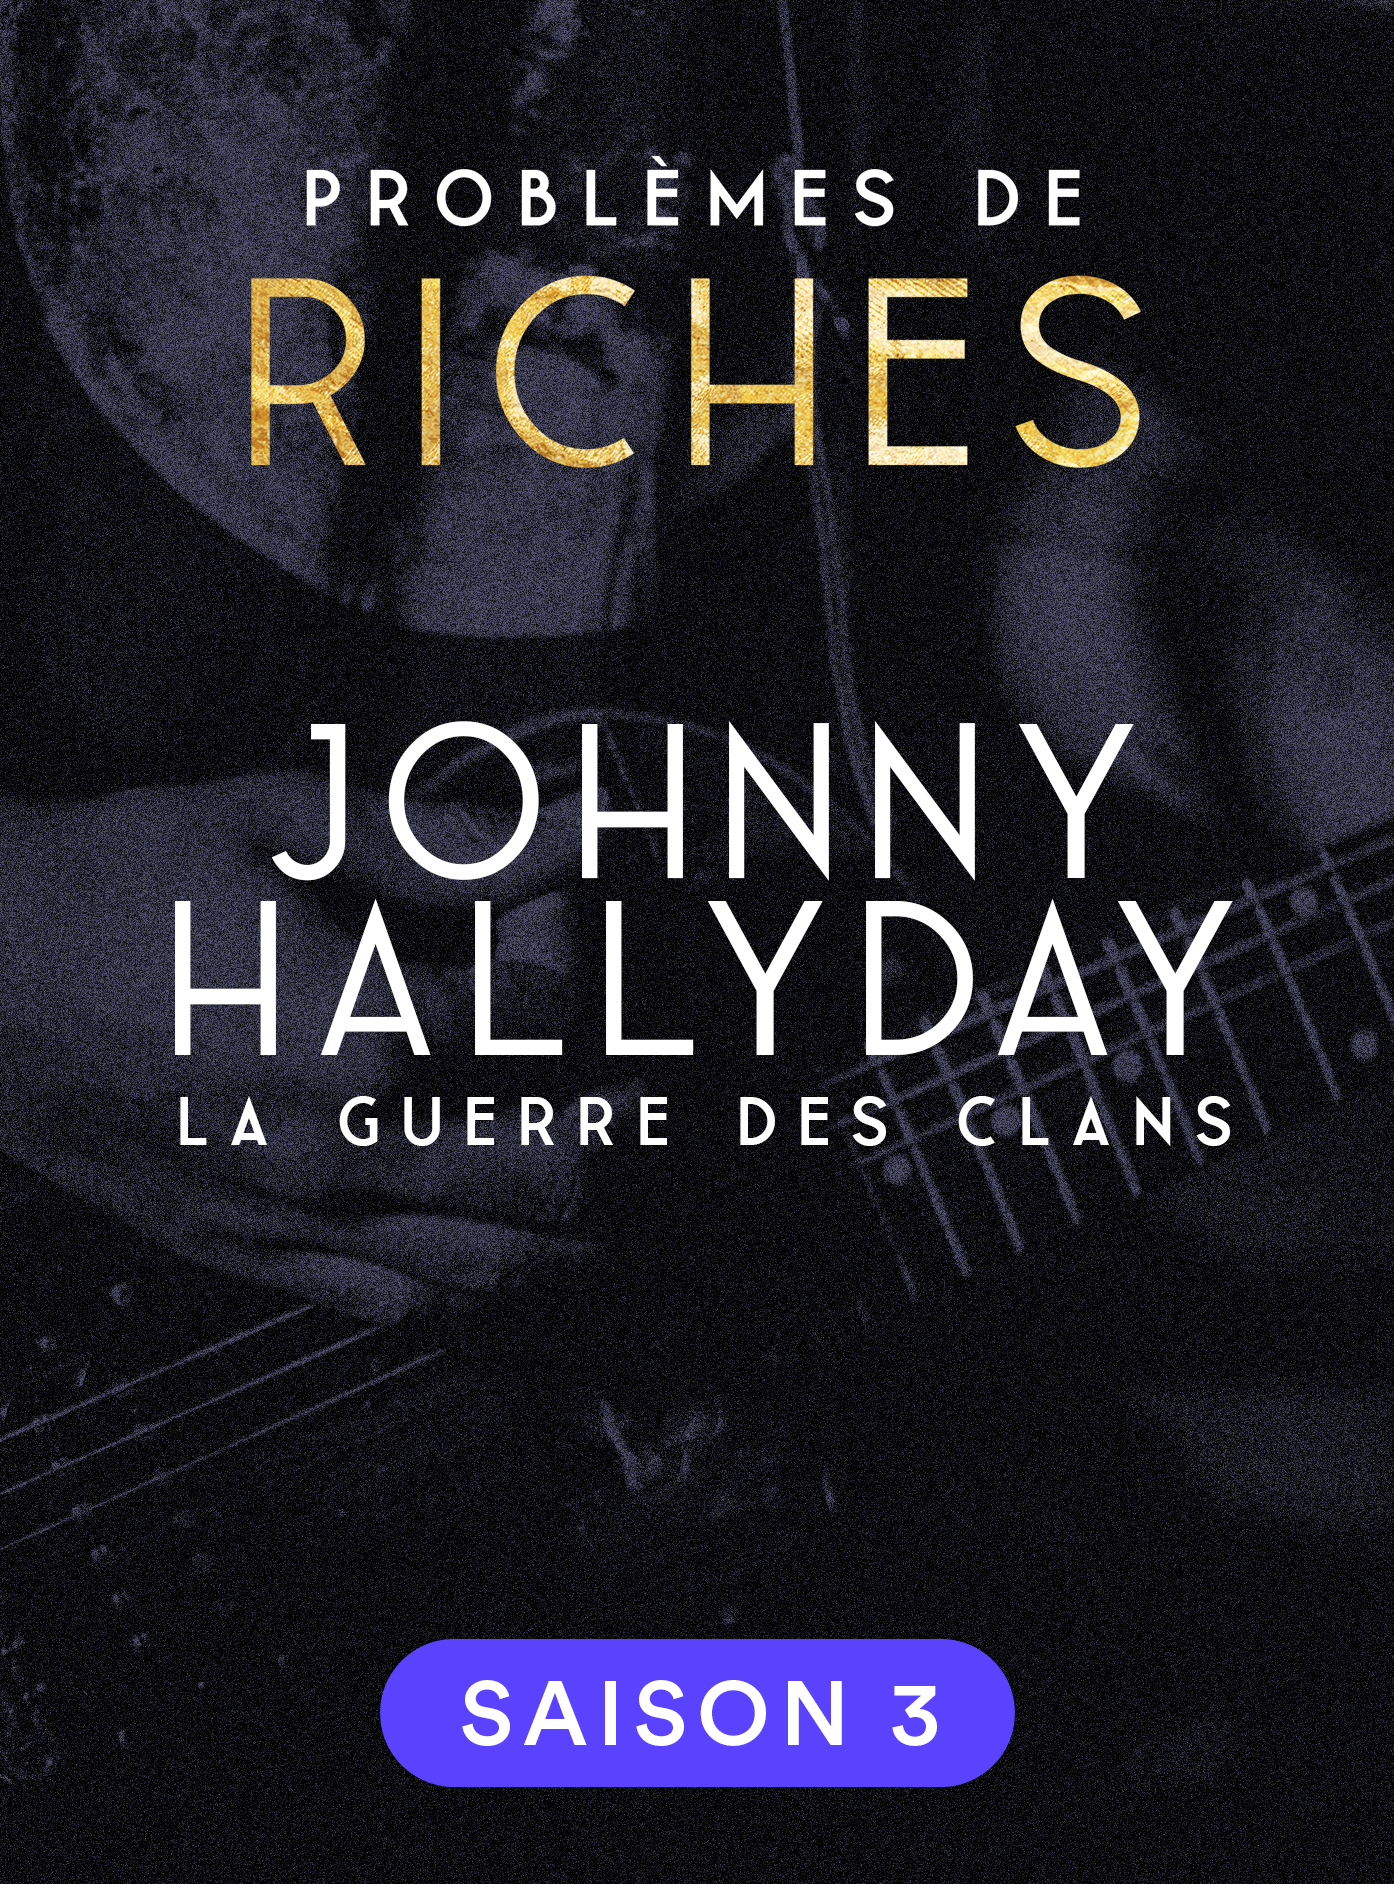 Johnny Hallyday, la guerre des clans